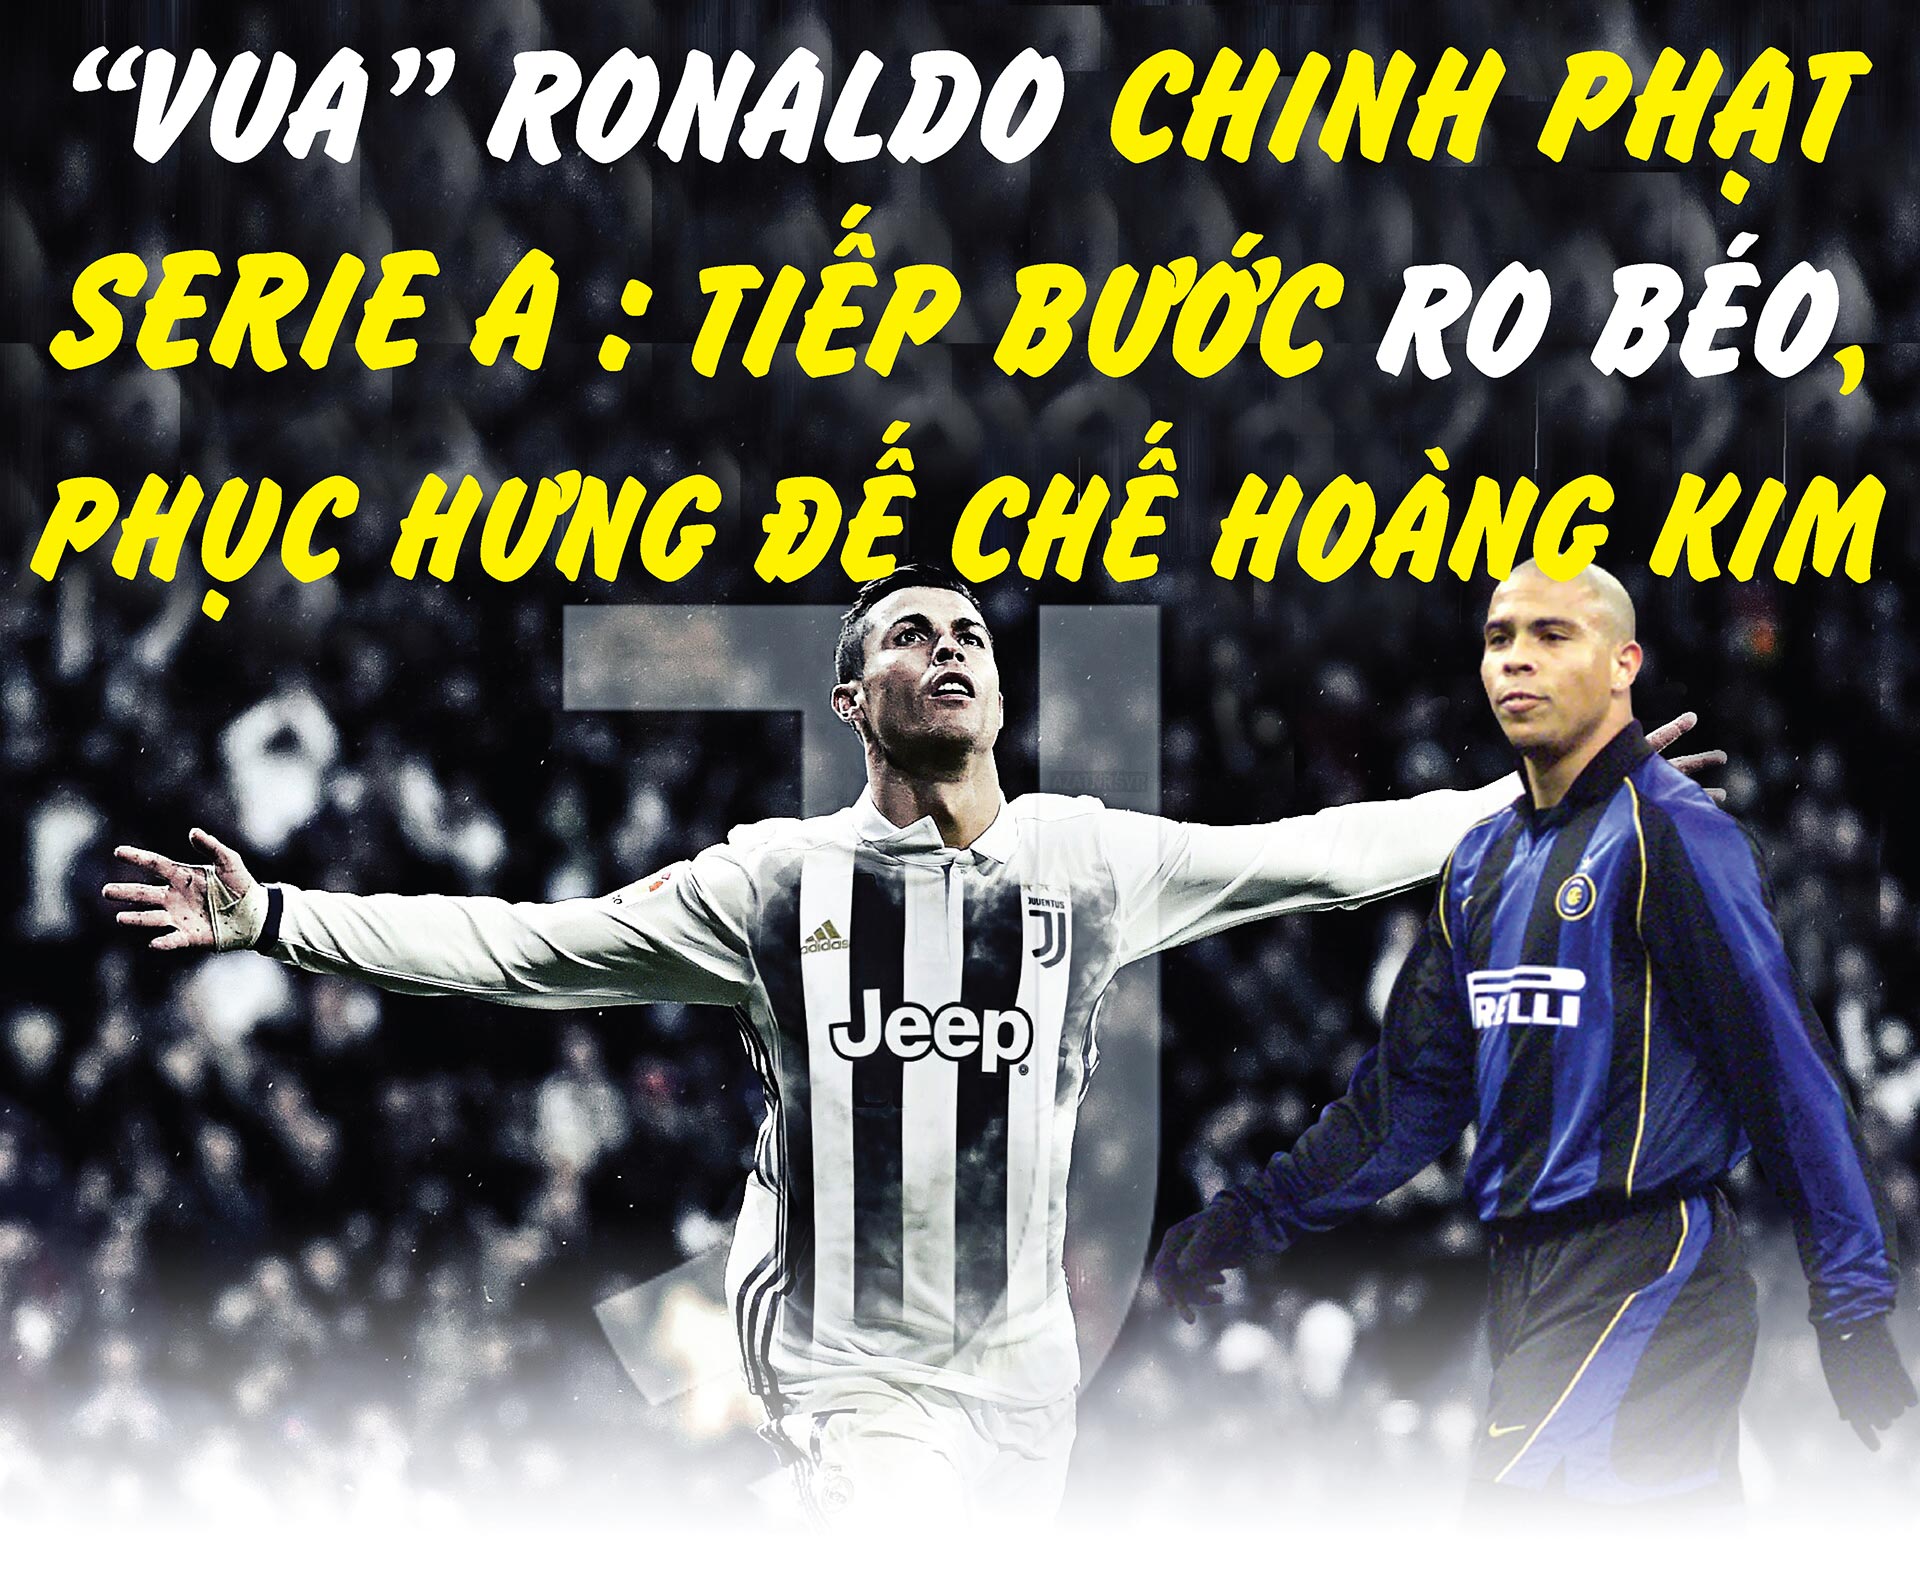 &#34;Vua&#34; Ronaldo chinh phạt Serie A: Tiếp bước Ro béo, phục hưng đế chế hoàng kim - 1